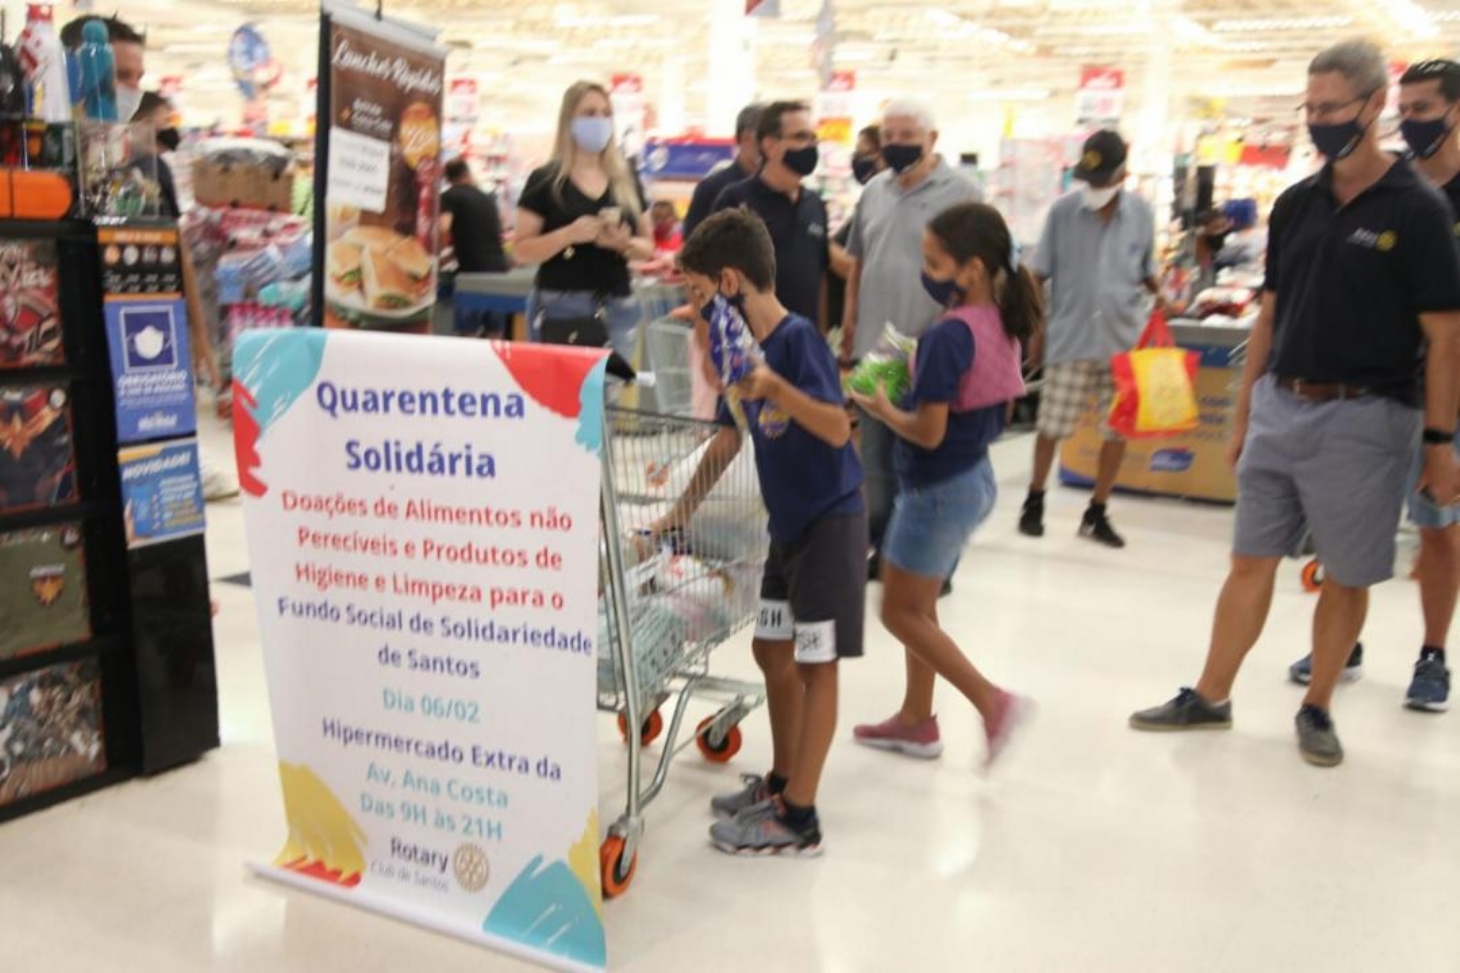 Campanha Já Arrecadou 18 Tonelada De Alimentos E Produtos De Higiene Em Santos Jornal Da Orla 4713